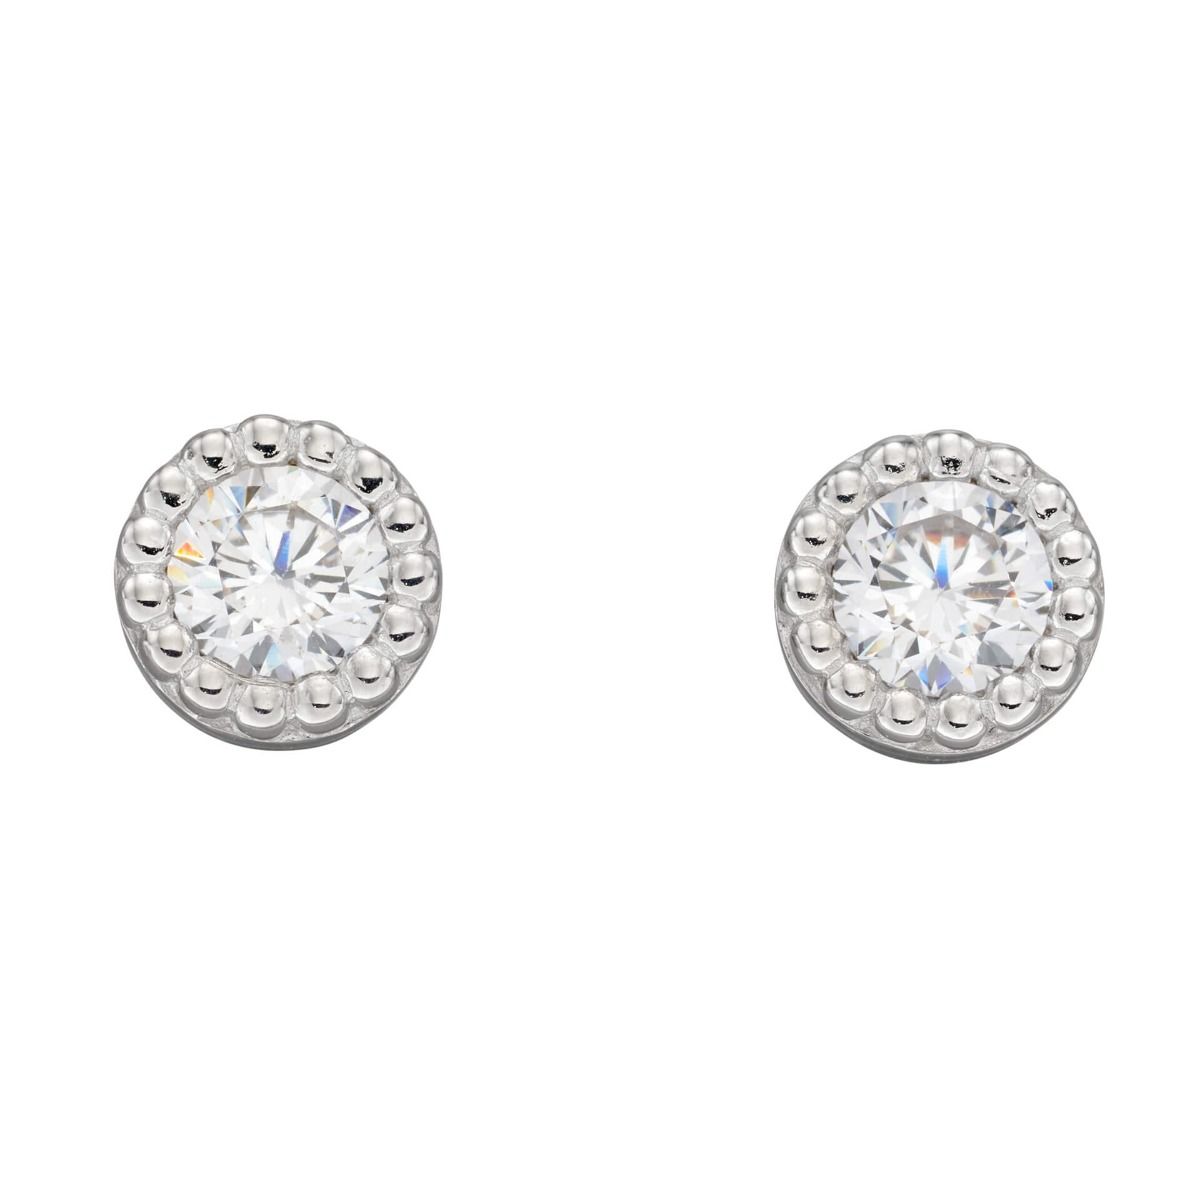 Round fancy cubic zirconia stud earrings sterling silver